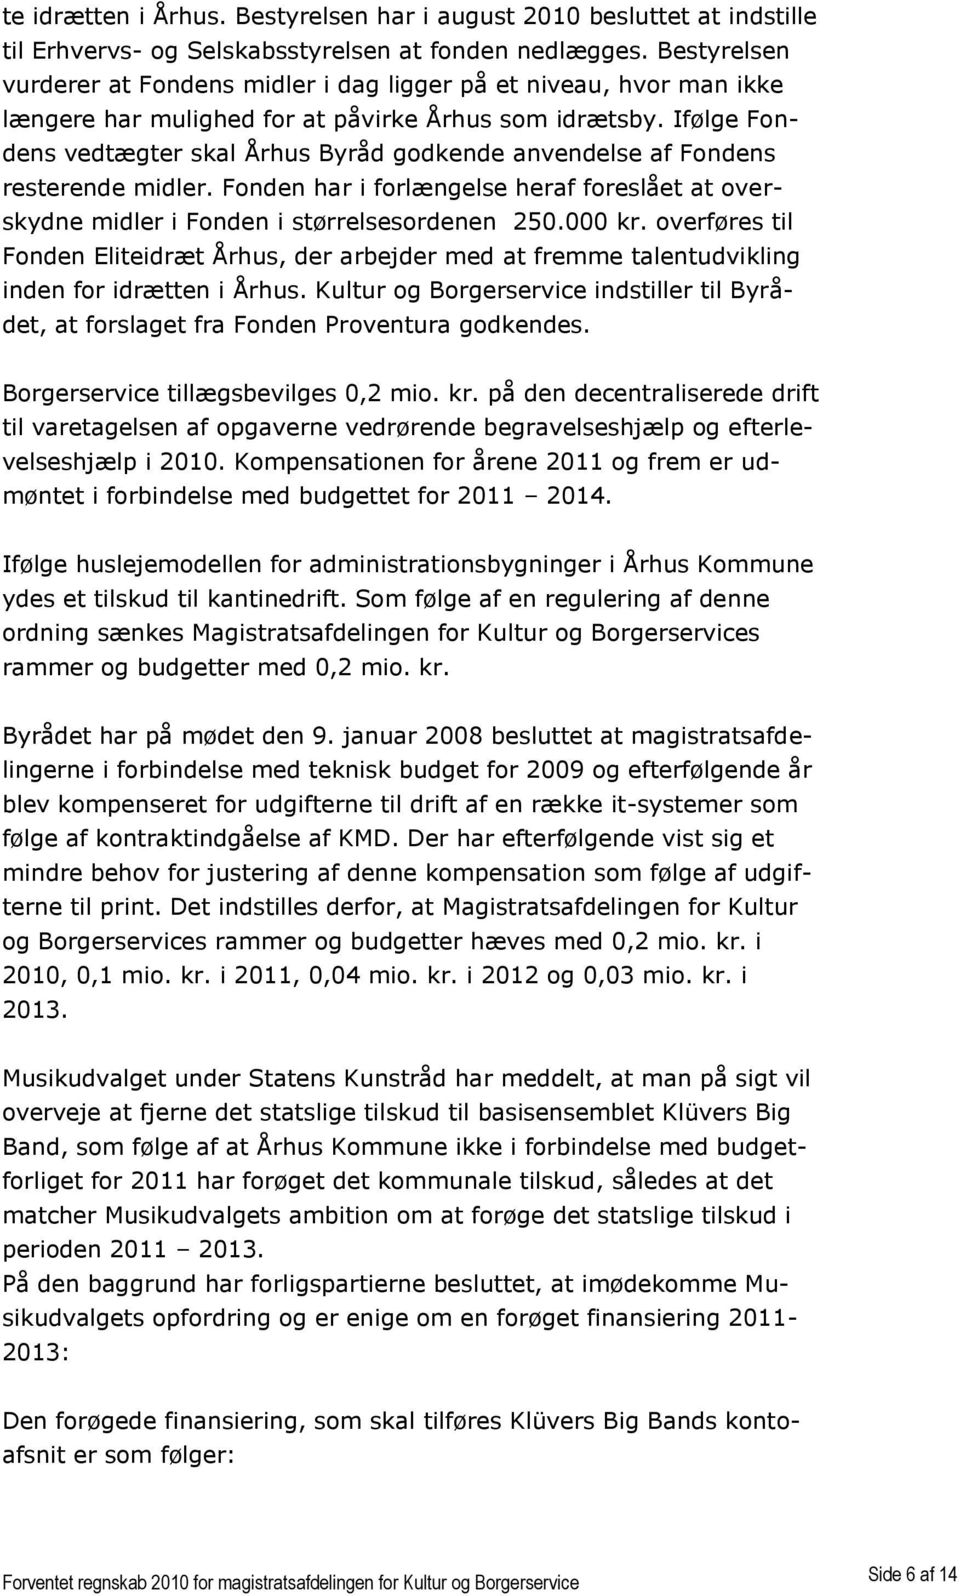 Ifølge Fondens vedtægter skal Århus Byråd godkende anvendelse af Fondens resterende midler. Fonden har i forlængelse heraf foreslået at overskydne midler i Fonden i størrelsesordenen 250.000 kr.